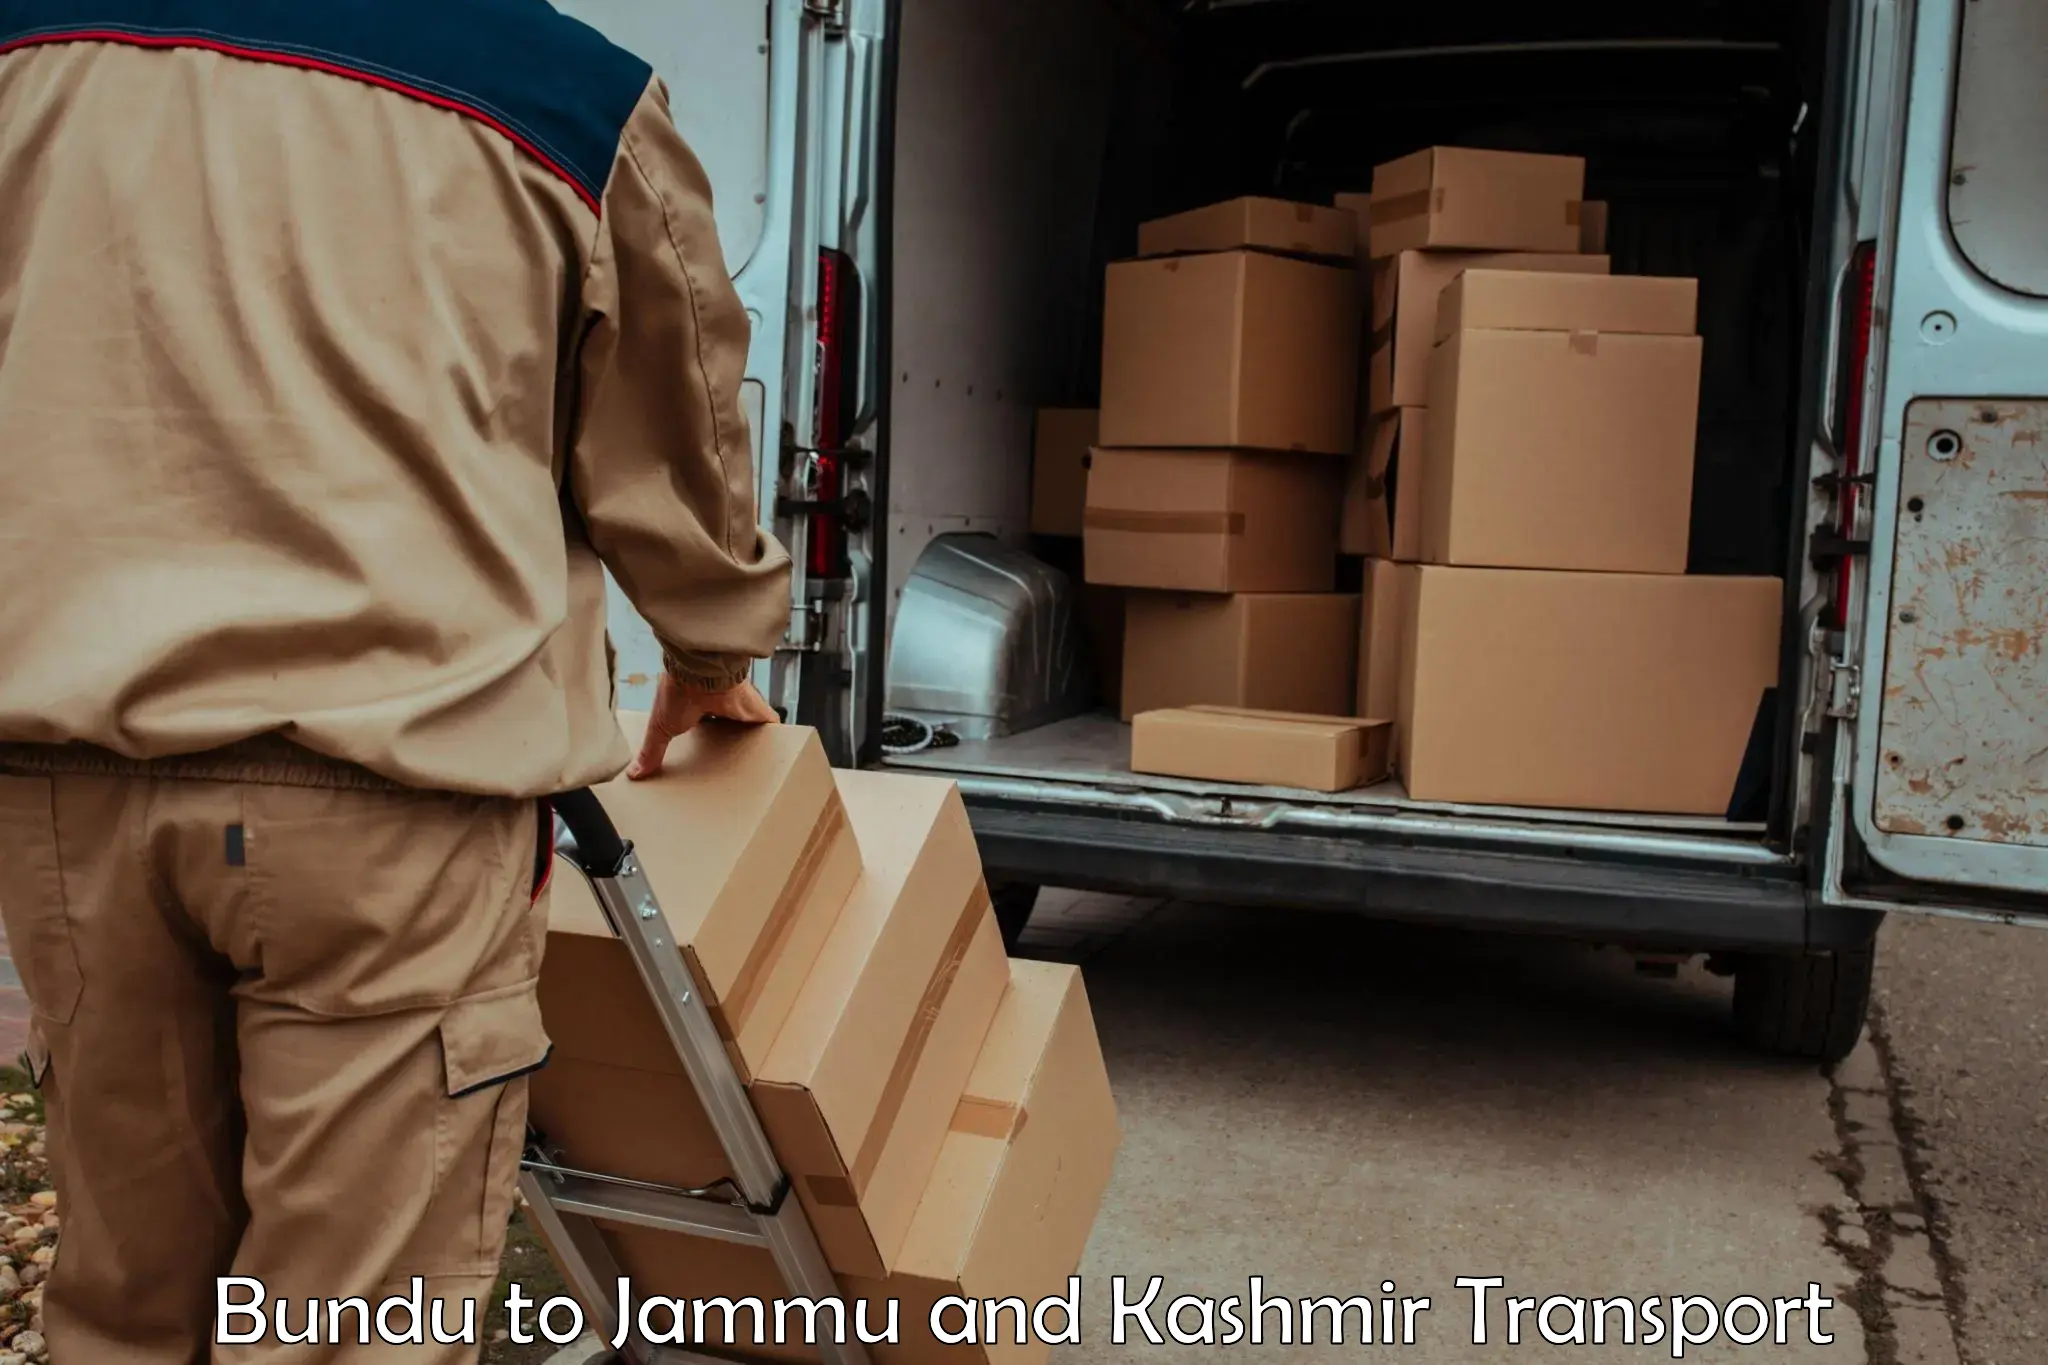 Truck transport companies in India in Bundu to Baramulla